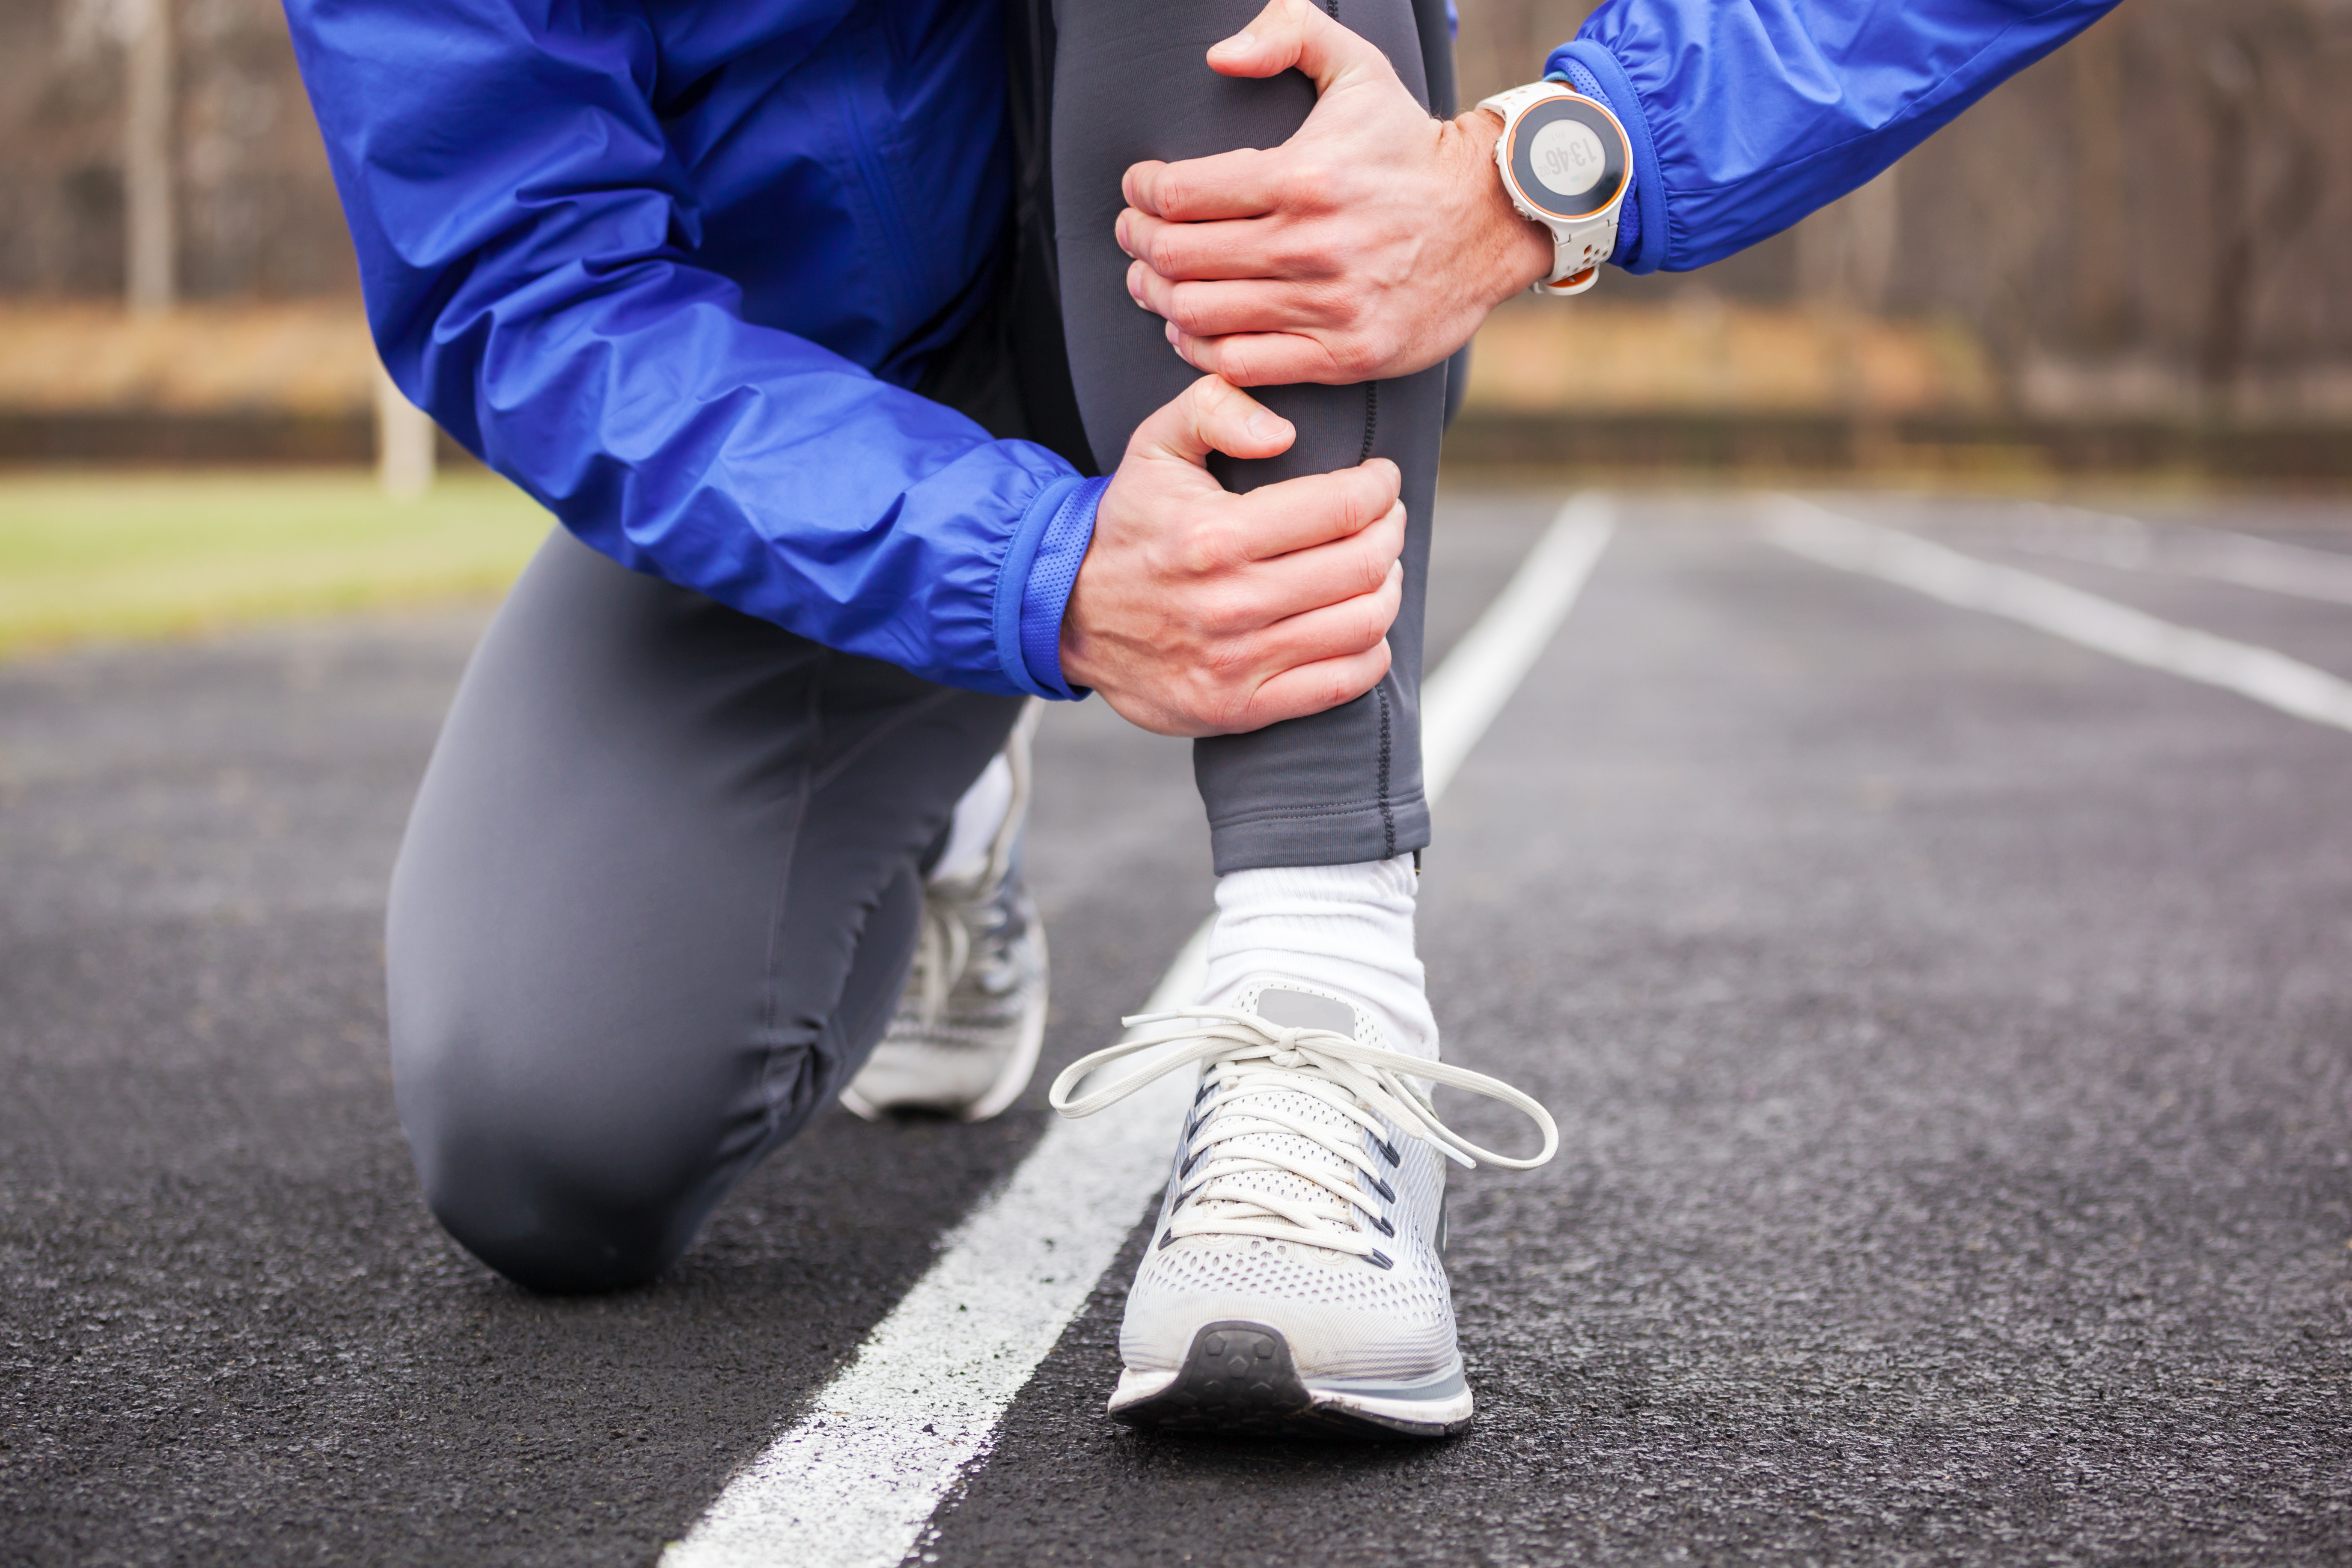 runner-holding-injured-leg